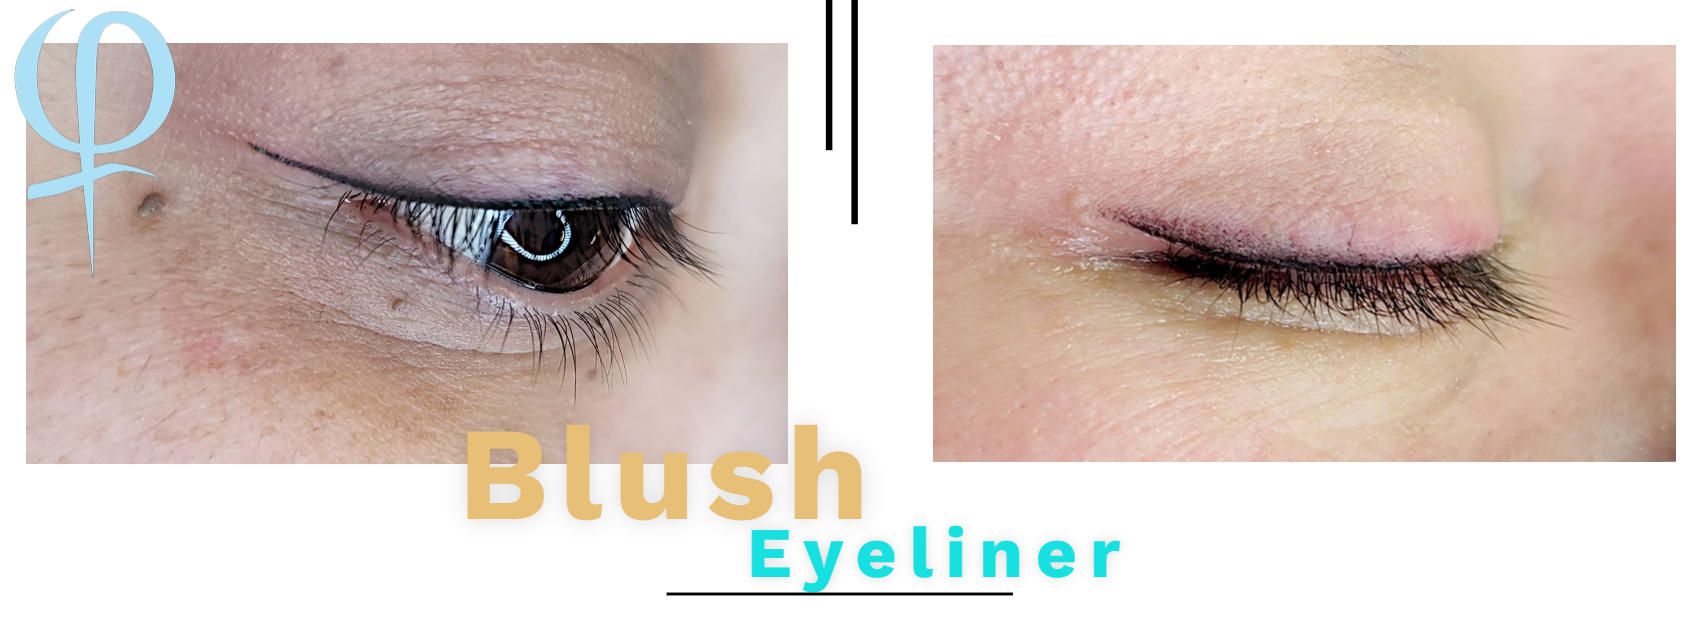 blush eyeliner, blusheyeliner, eyeliner, eyeliner permanent makeup